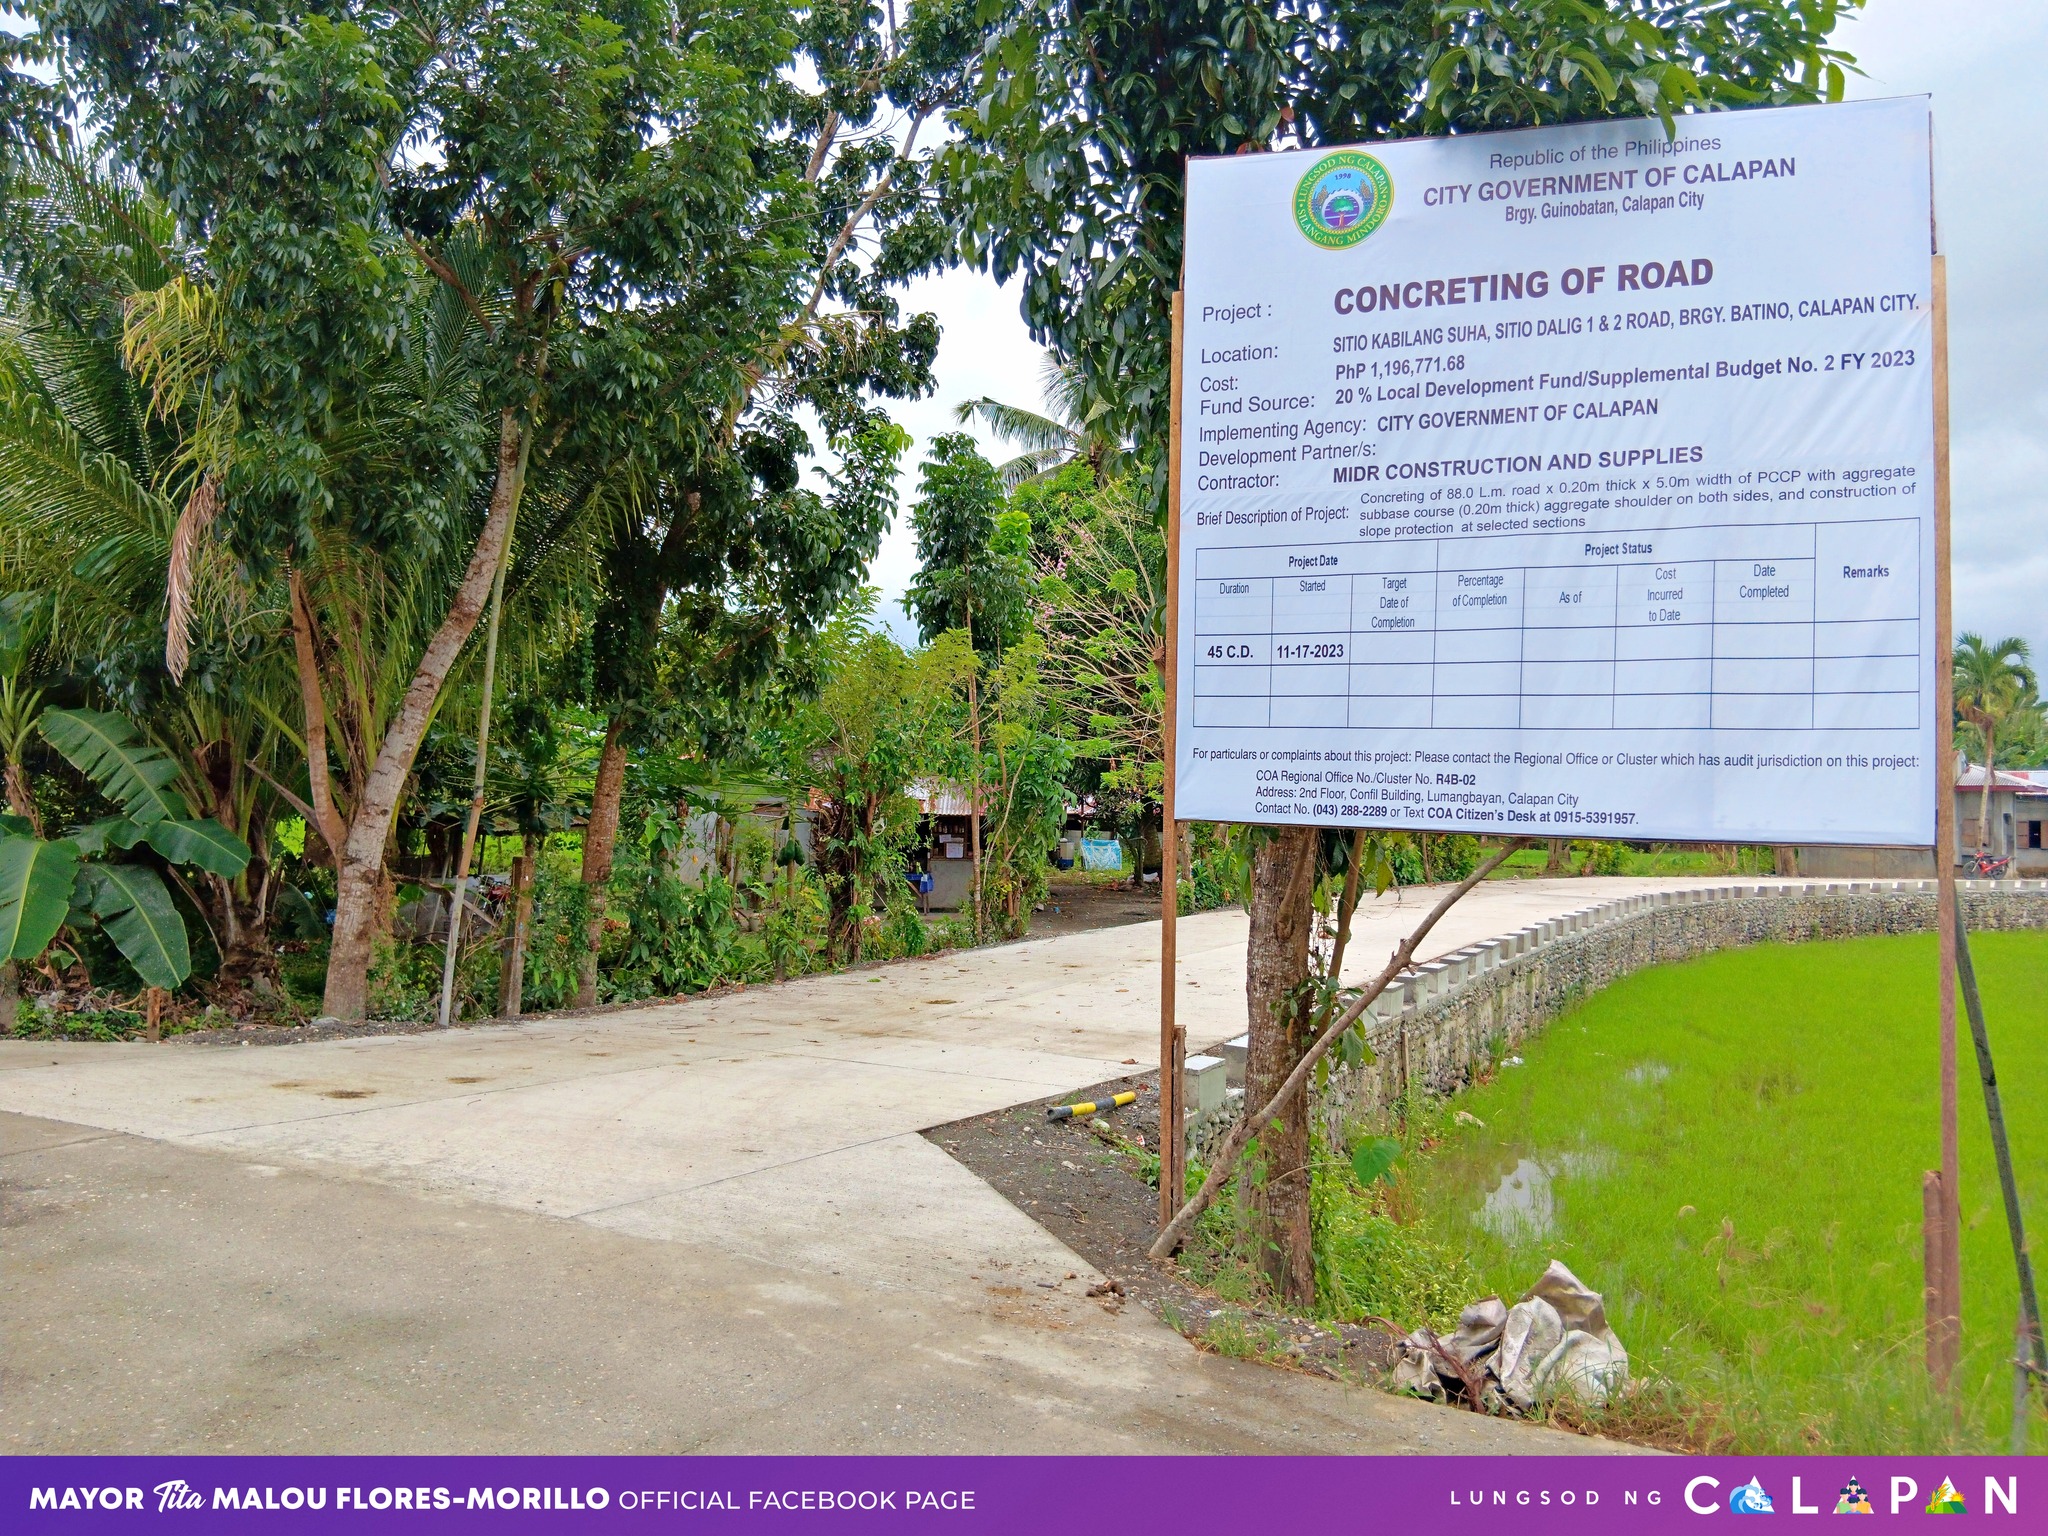 Concreting of Road at Sitio Kabilang Suha, Sitio Dalig 1 & 2. Brgy. Batino